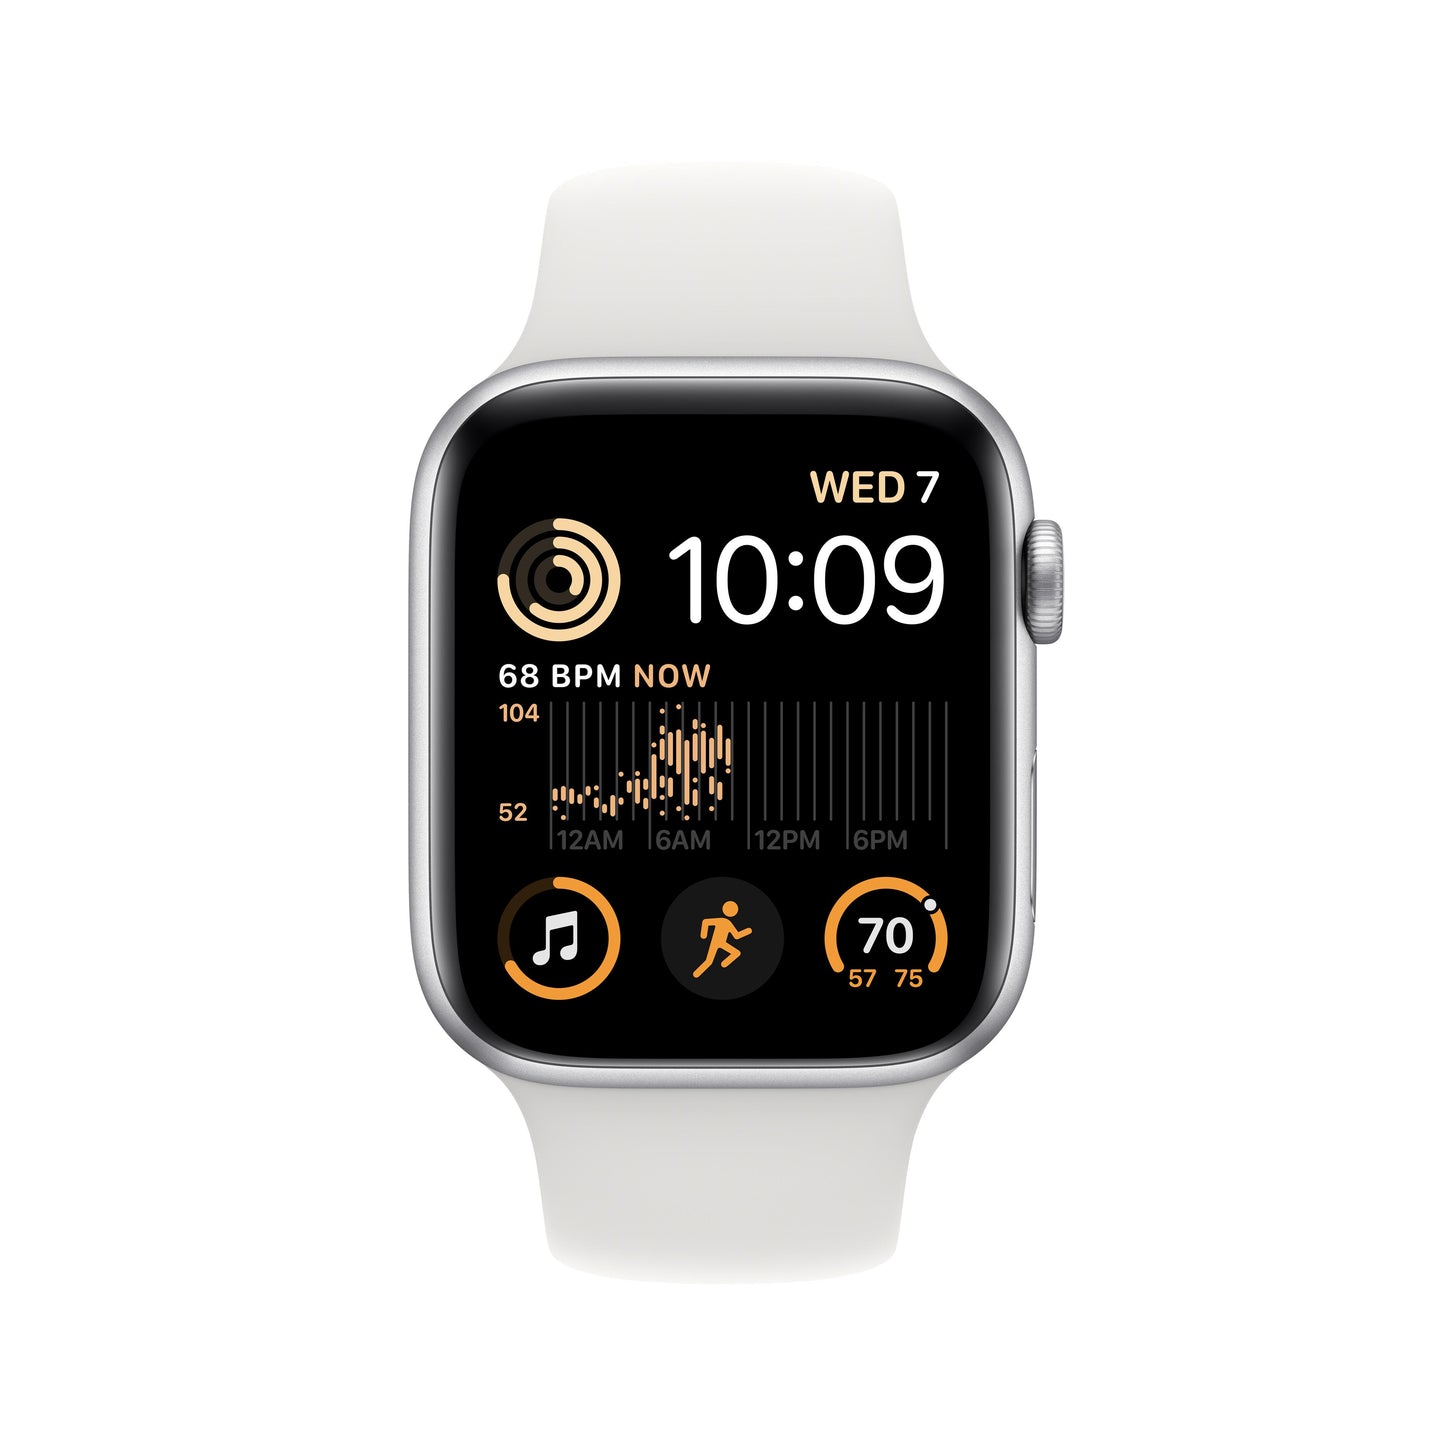 ساعة Apple SE (وظيفة الاتصال + نظام تحديد المواقع، 44 ملم) - هيكل الومنيوم فضي مع سوار رياضي ابيض -عادي